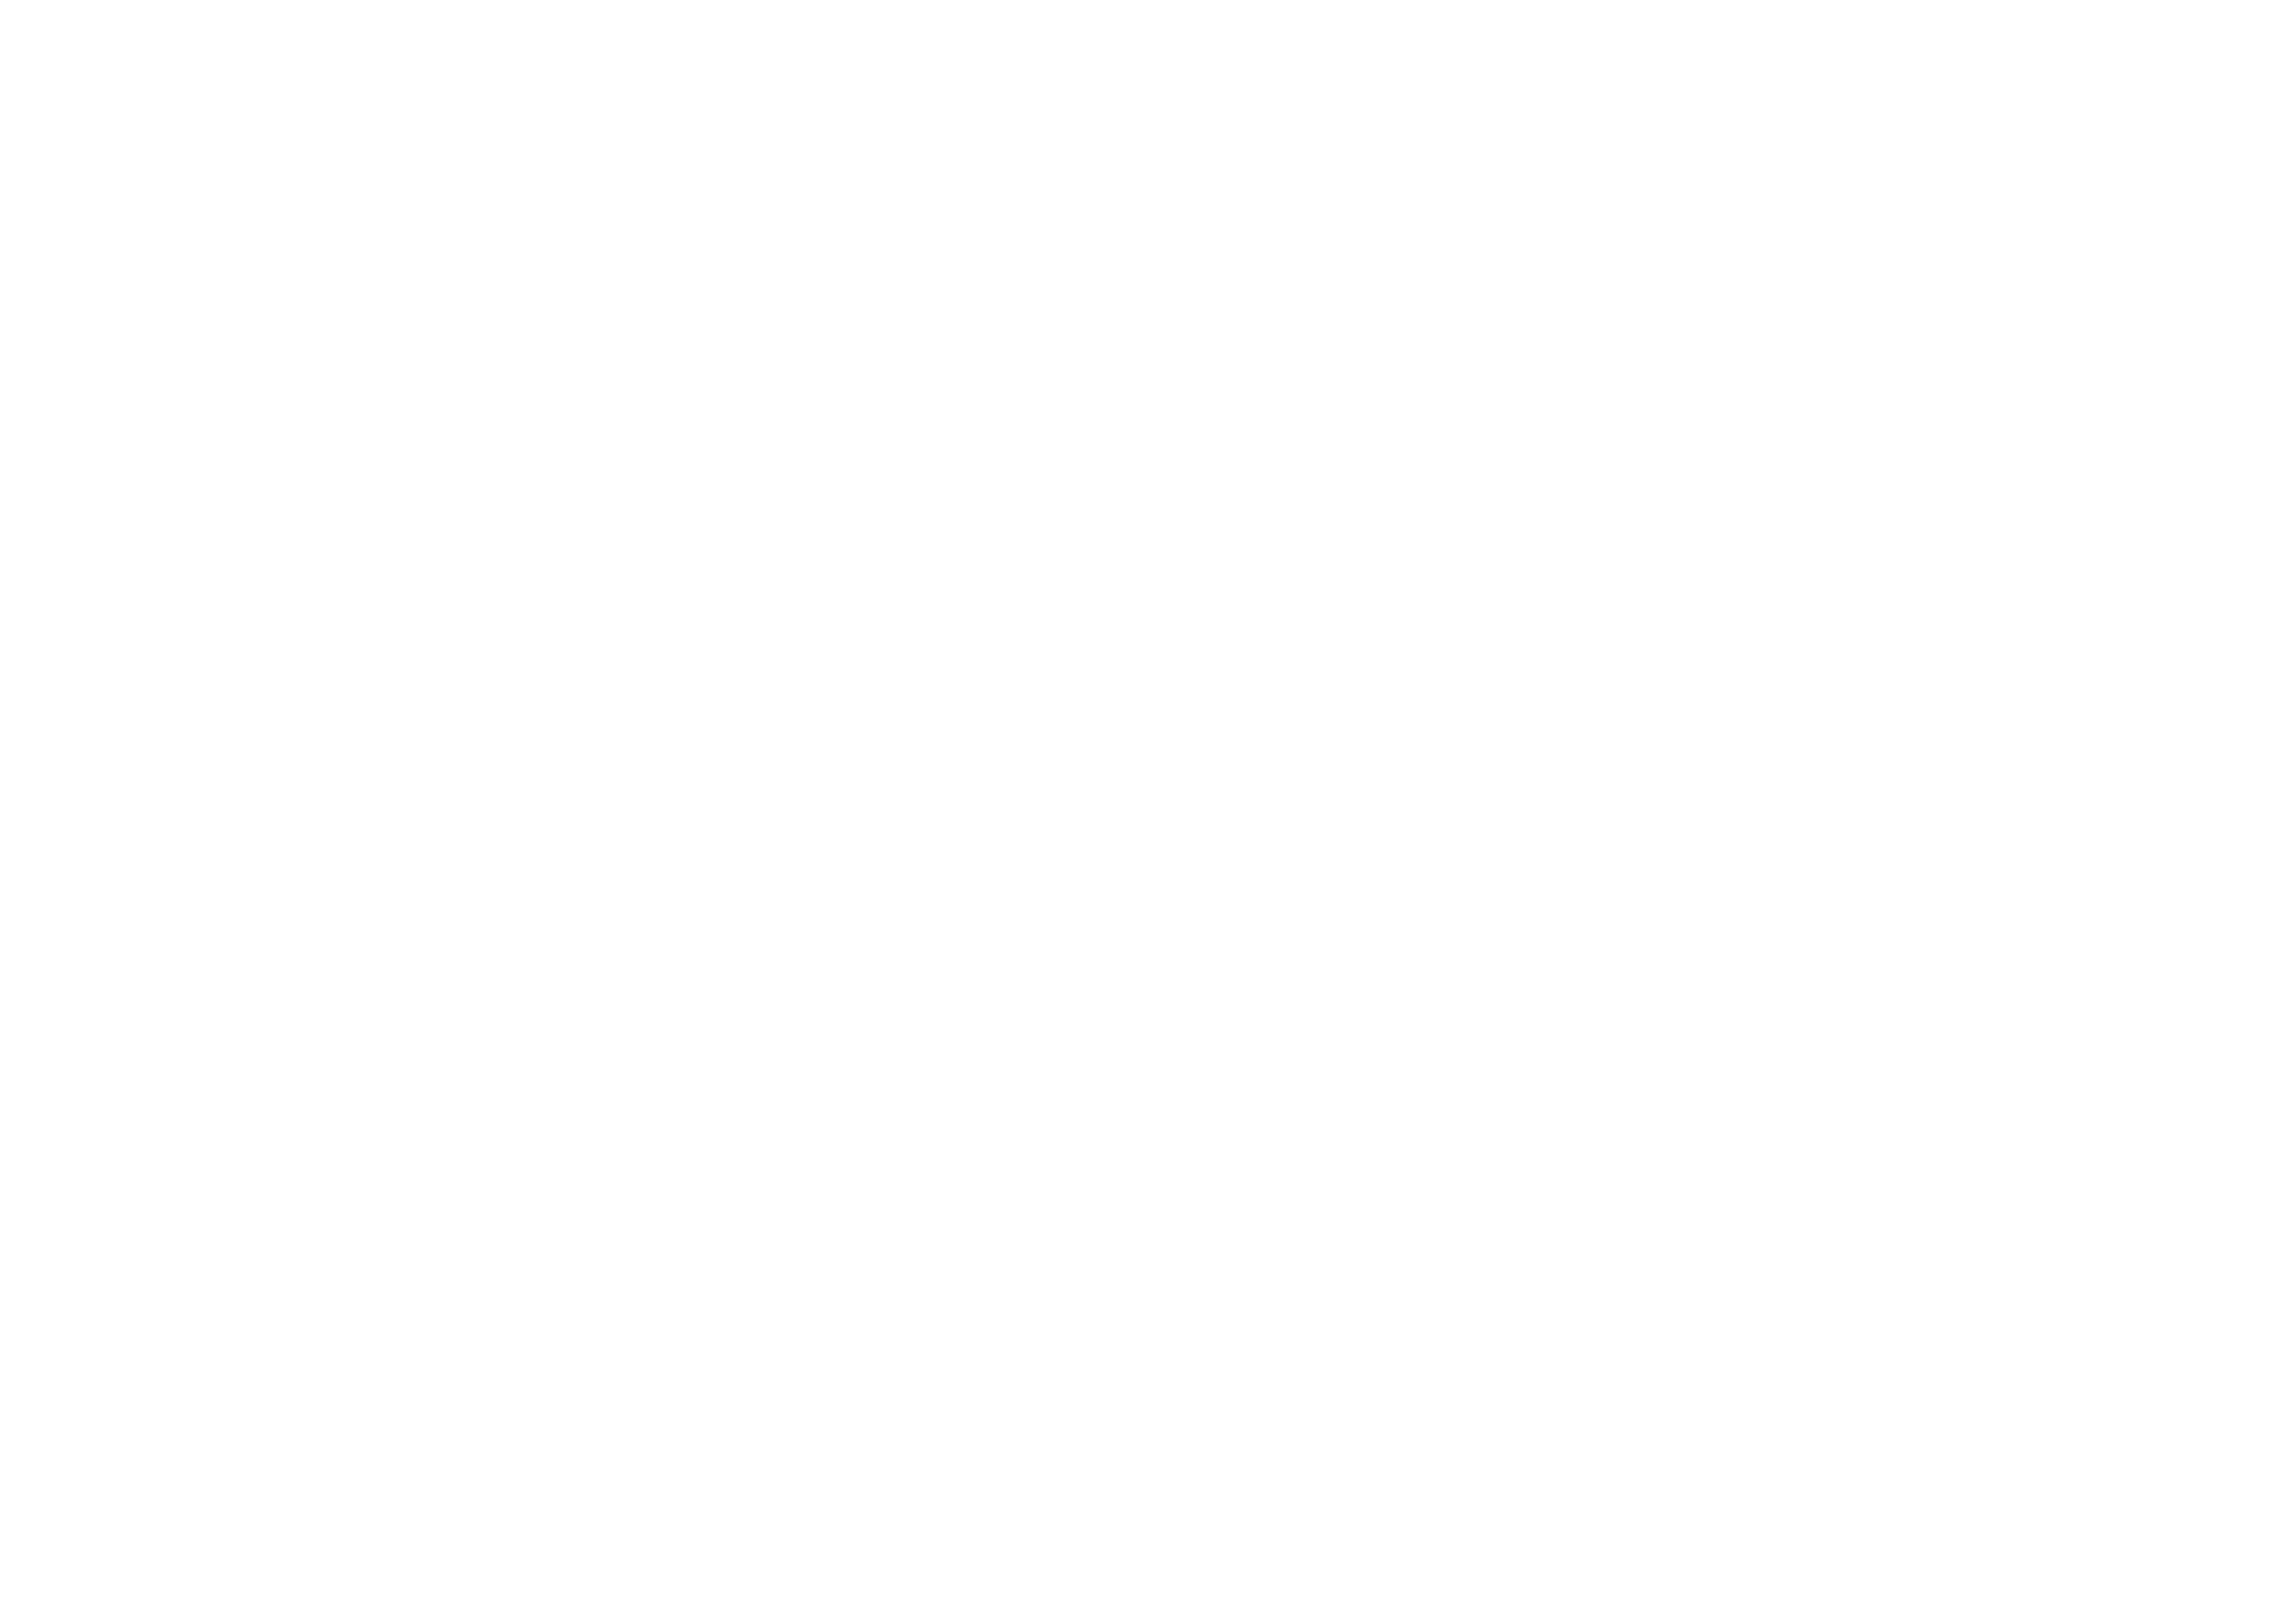 Oerol Pioniers